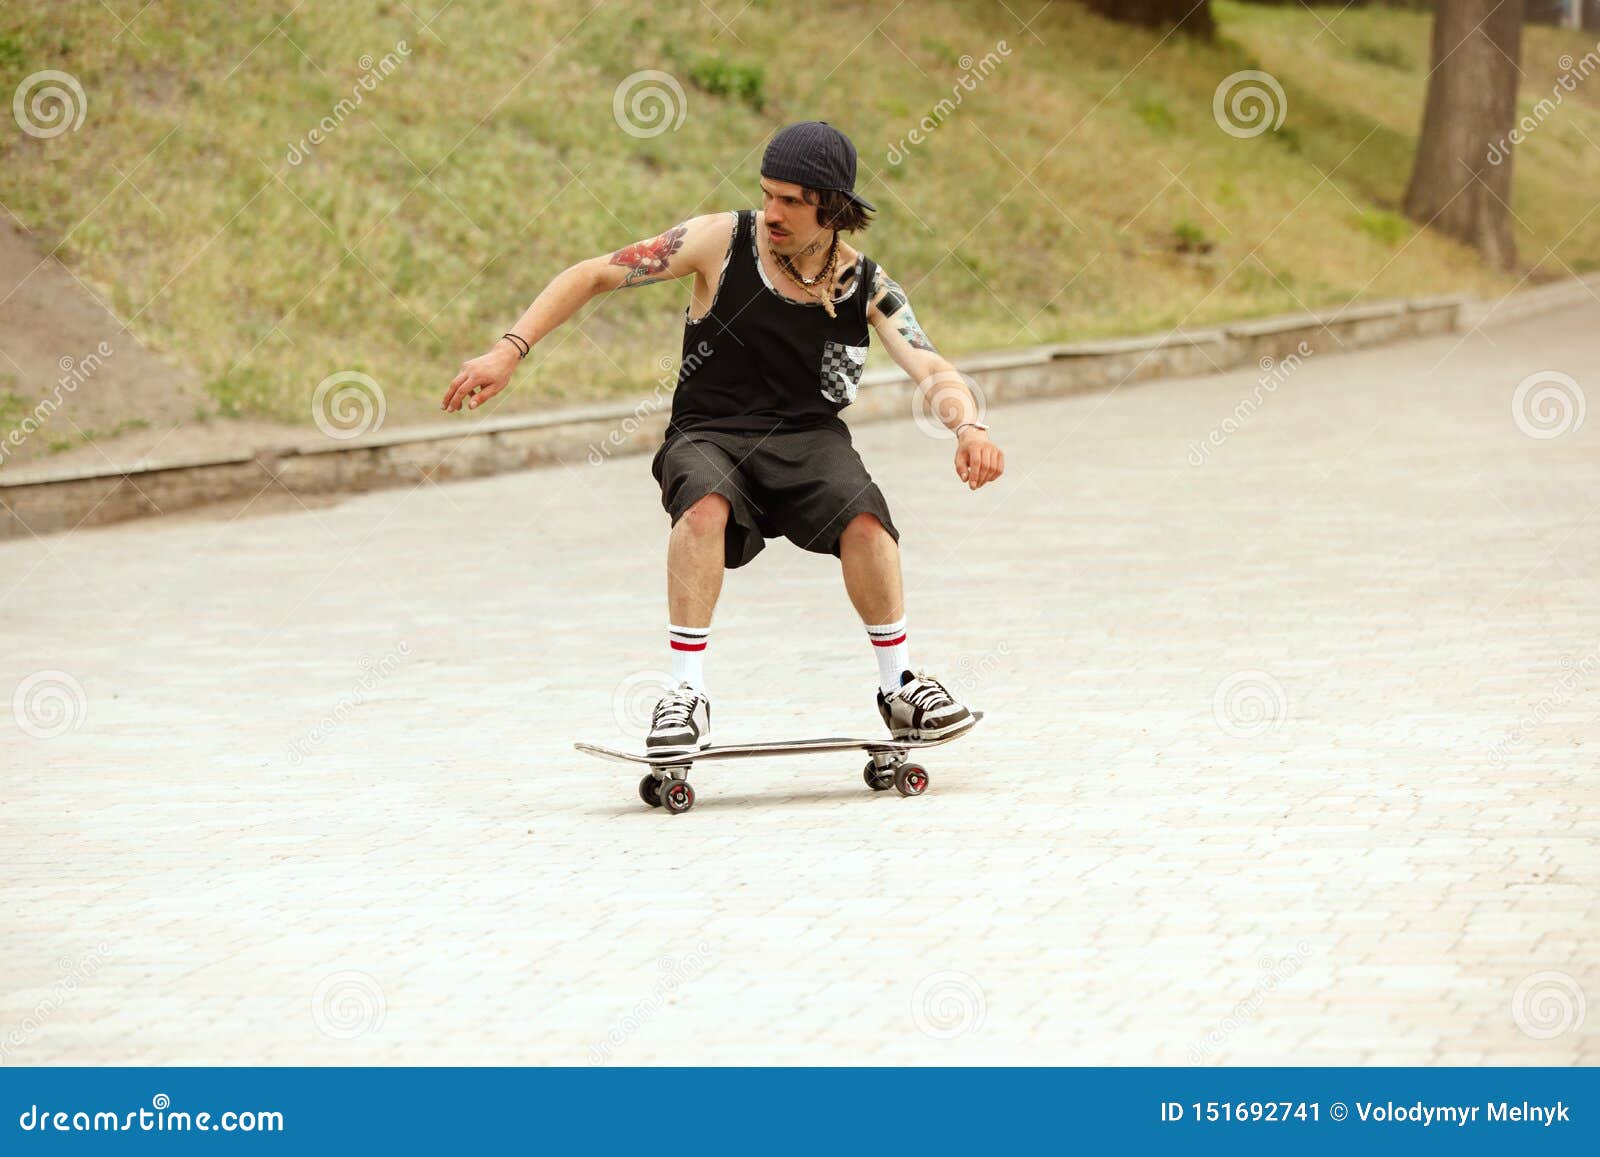 Skateboarder som cloudly gör ett trick på stadens gata i dag Ung man i gymnastikskor och lock som rider och longboarding på asfalten Begrepp av fritidsaktivitet, sporten, ytterligheten, hobbyen och rörelse